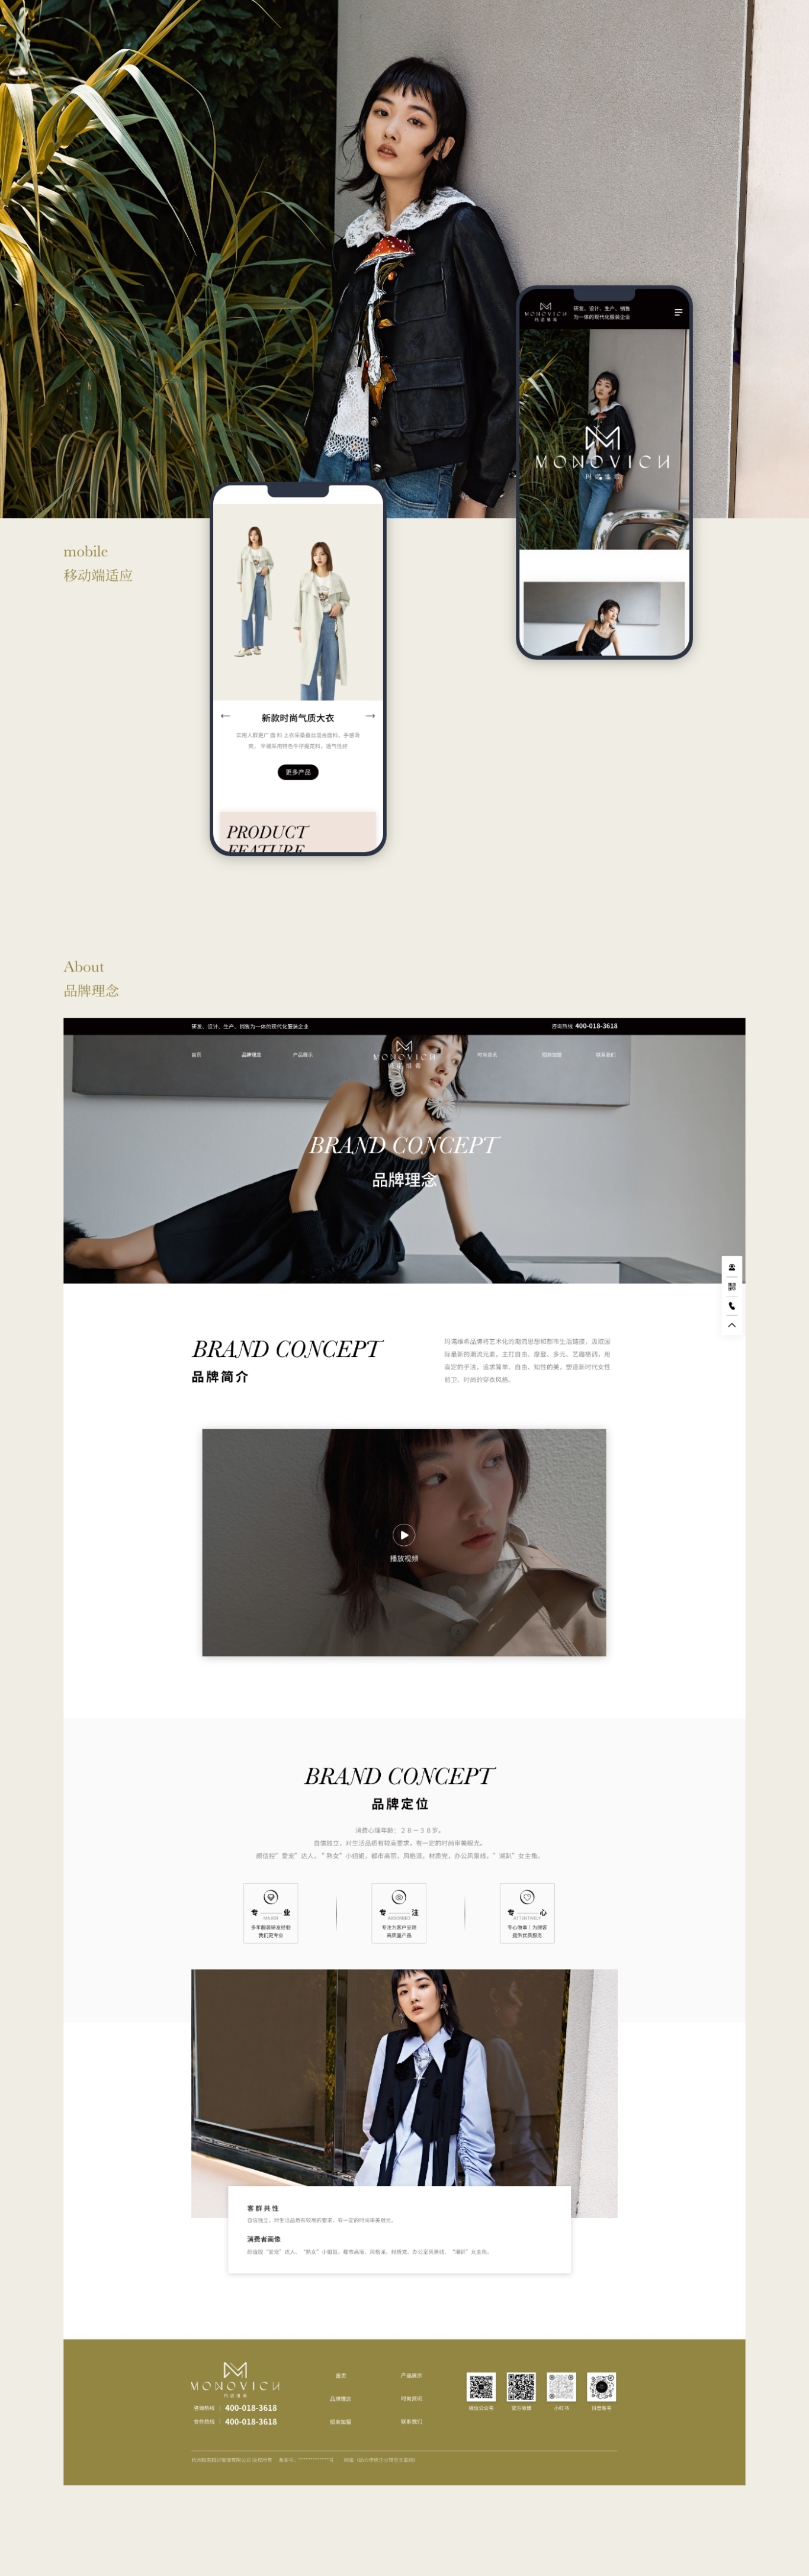 UI/UIX 瑪諾維希女裝品牌 網頁設計圖2